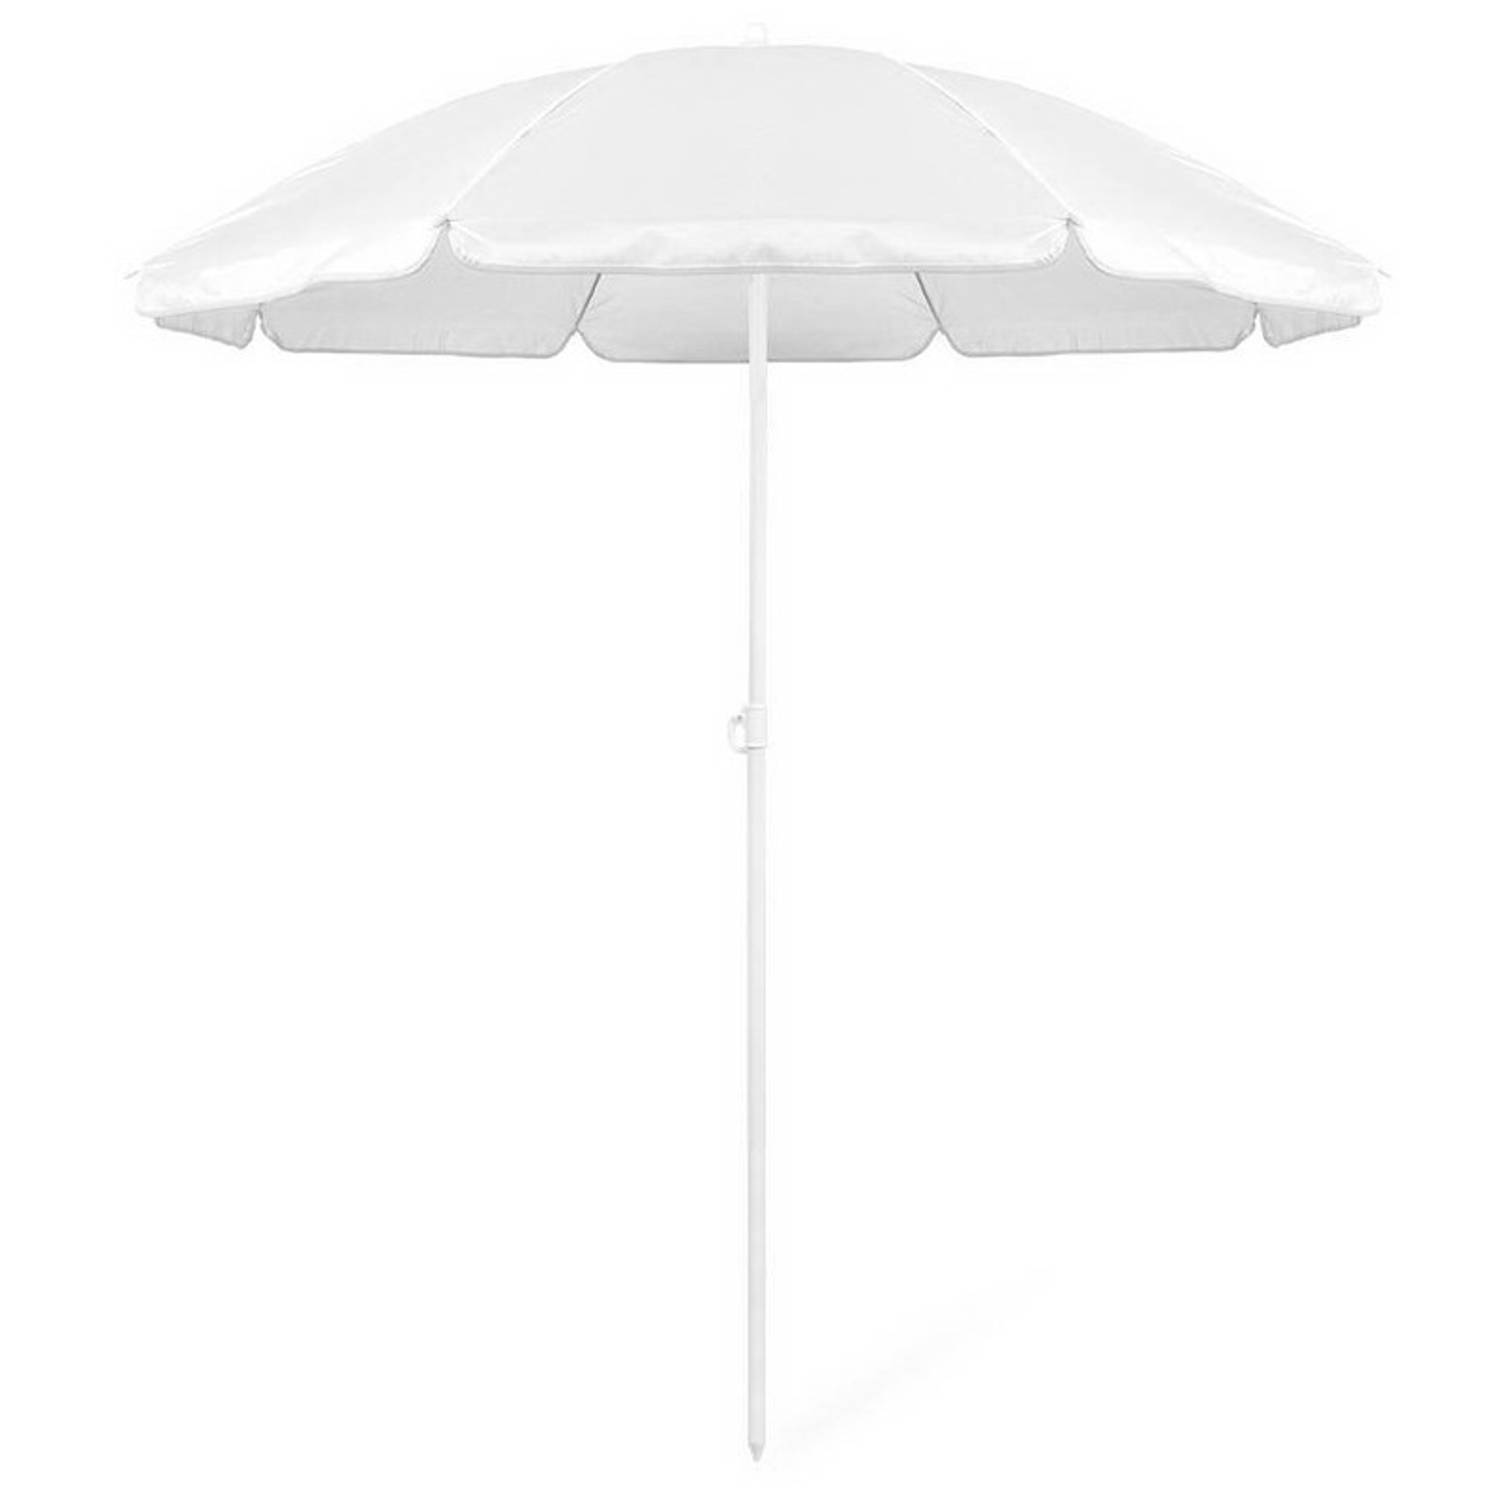 Wasserette Uiterlijk zijde Voordelige strandparasol wit 150 cm diameter - Parasols | Blokker